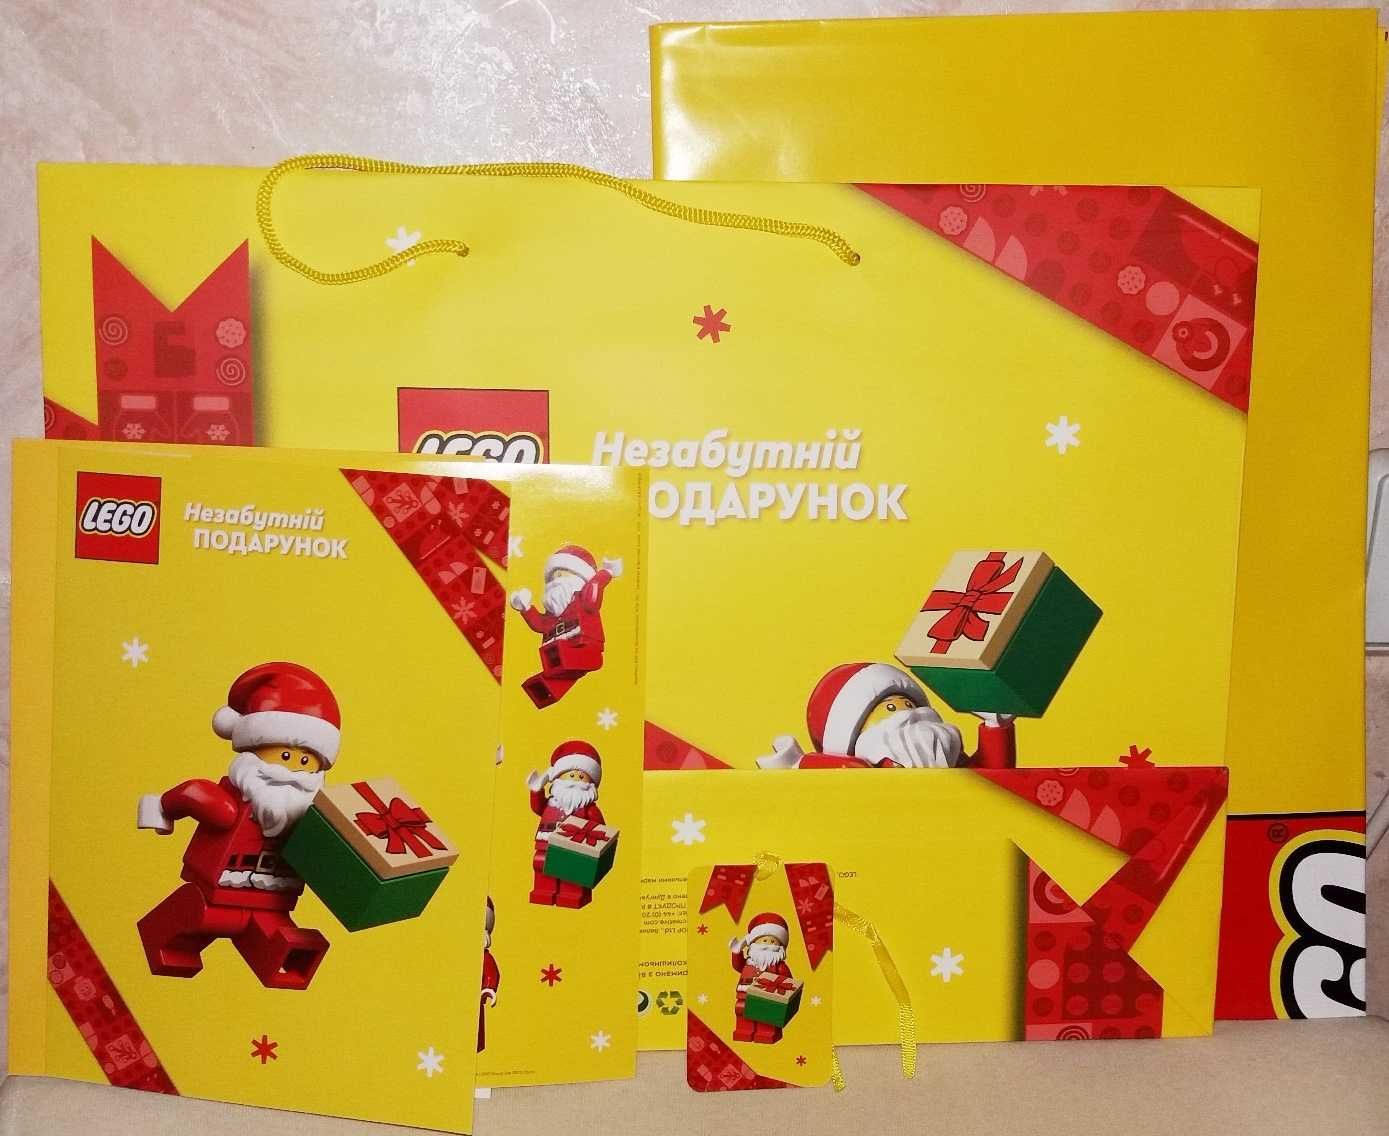 Lego Лего упаковочный подарочный новогодний рождественский набор